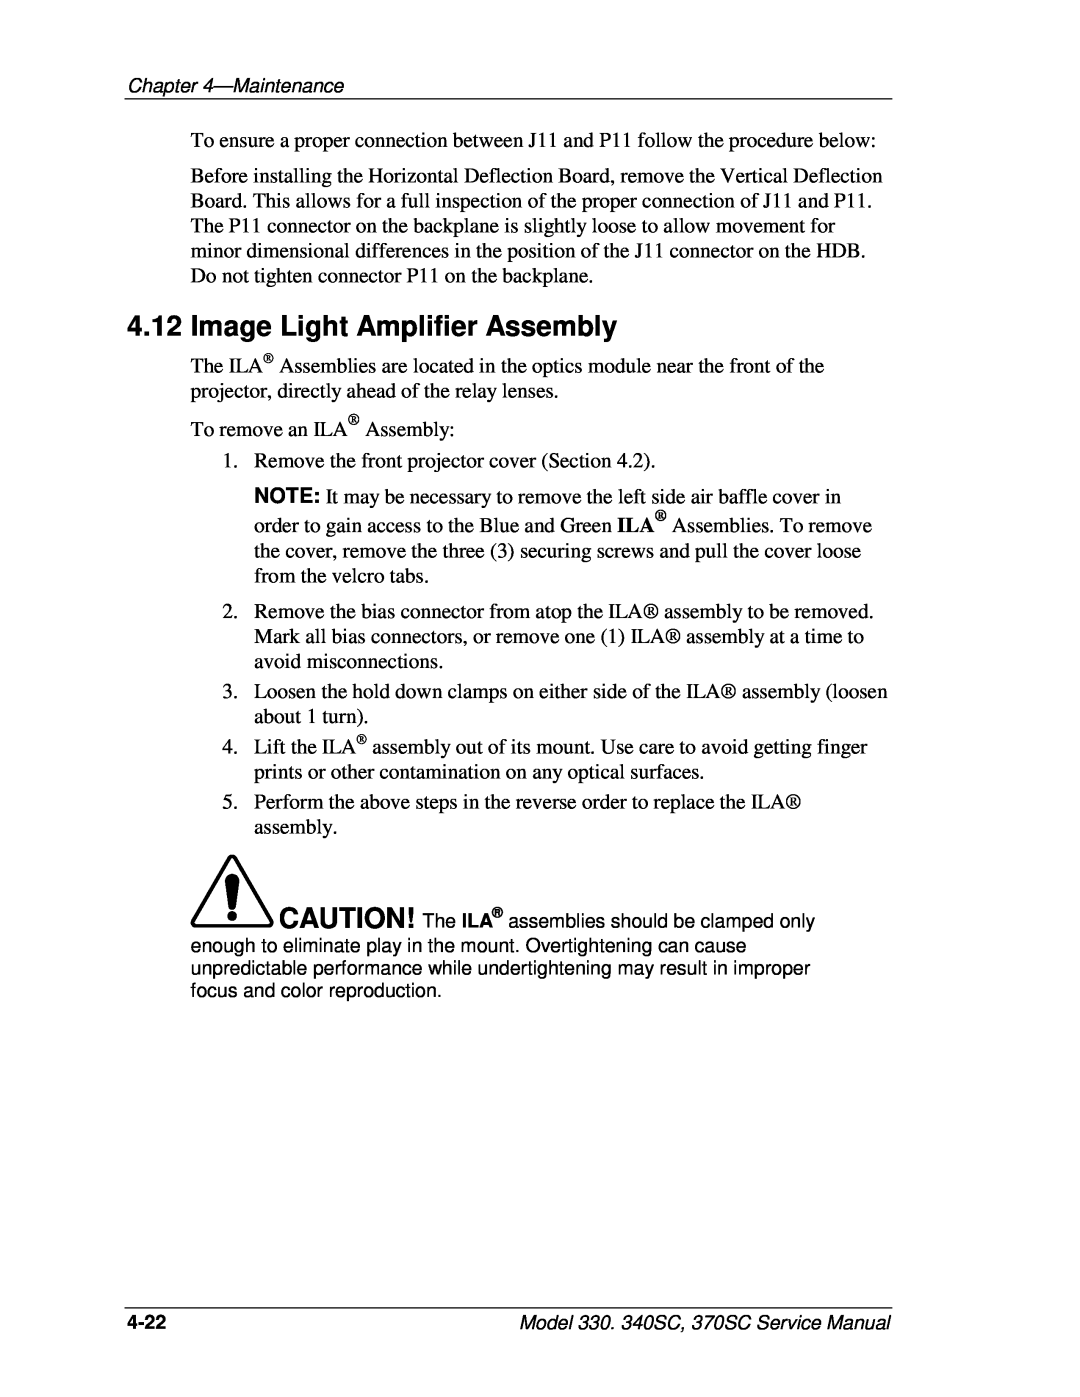 JVC 330, 370 SC, 340 SC service manual Image Light Amplifier Assembly 